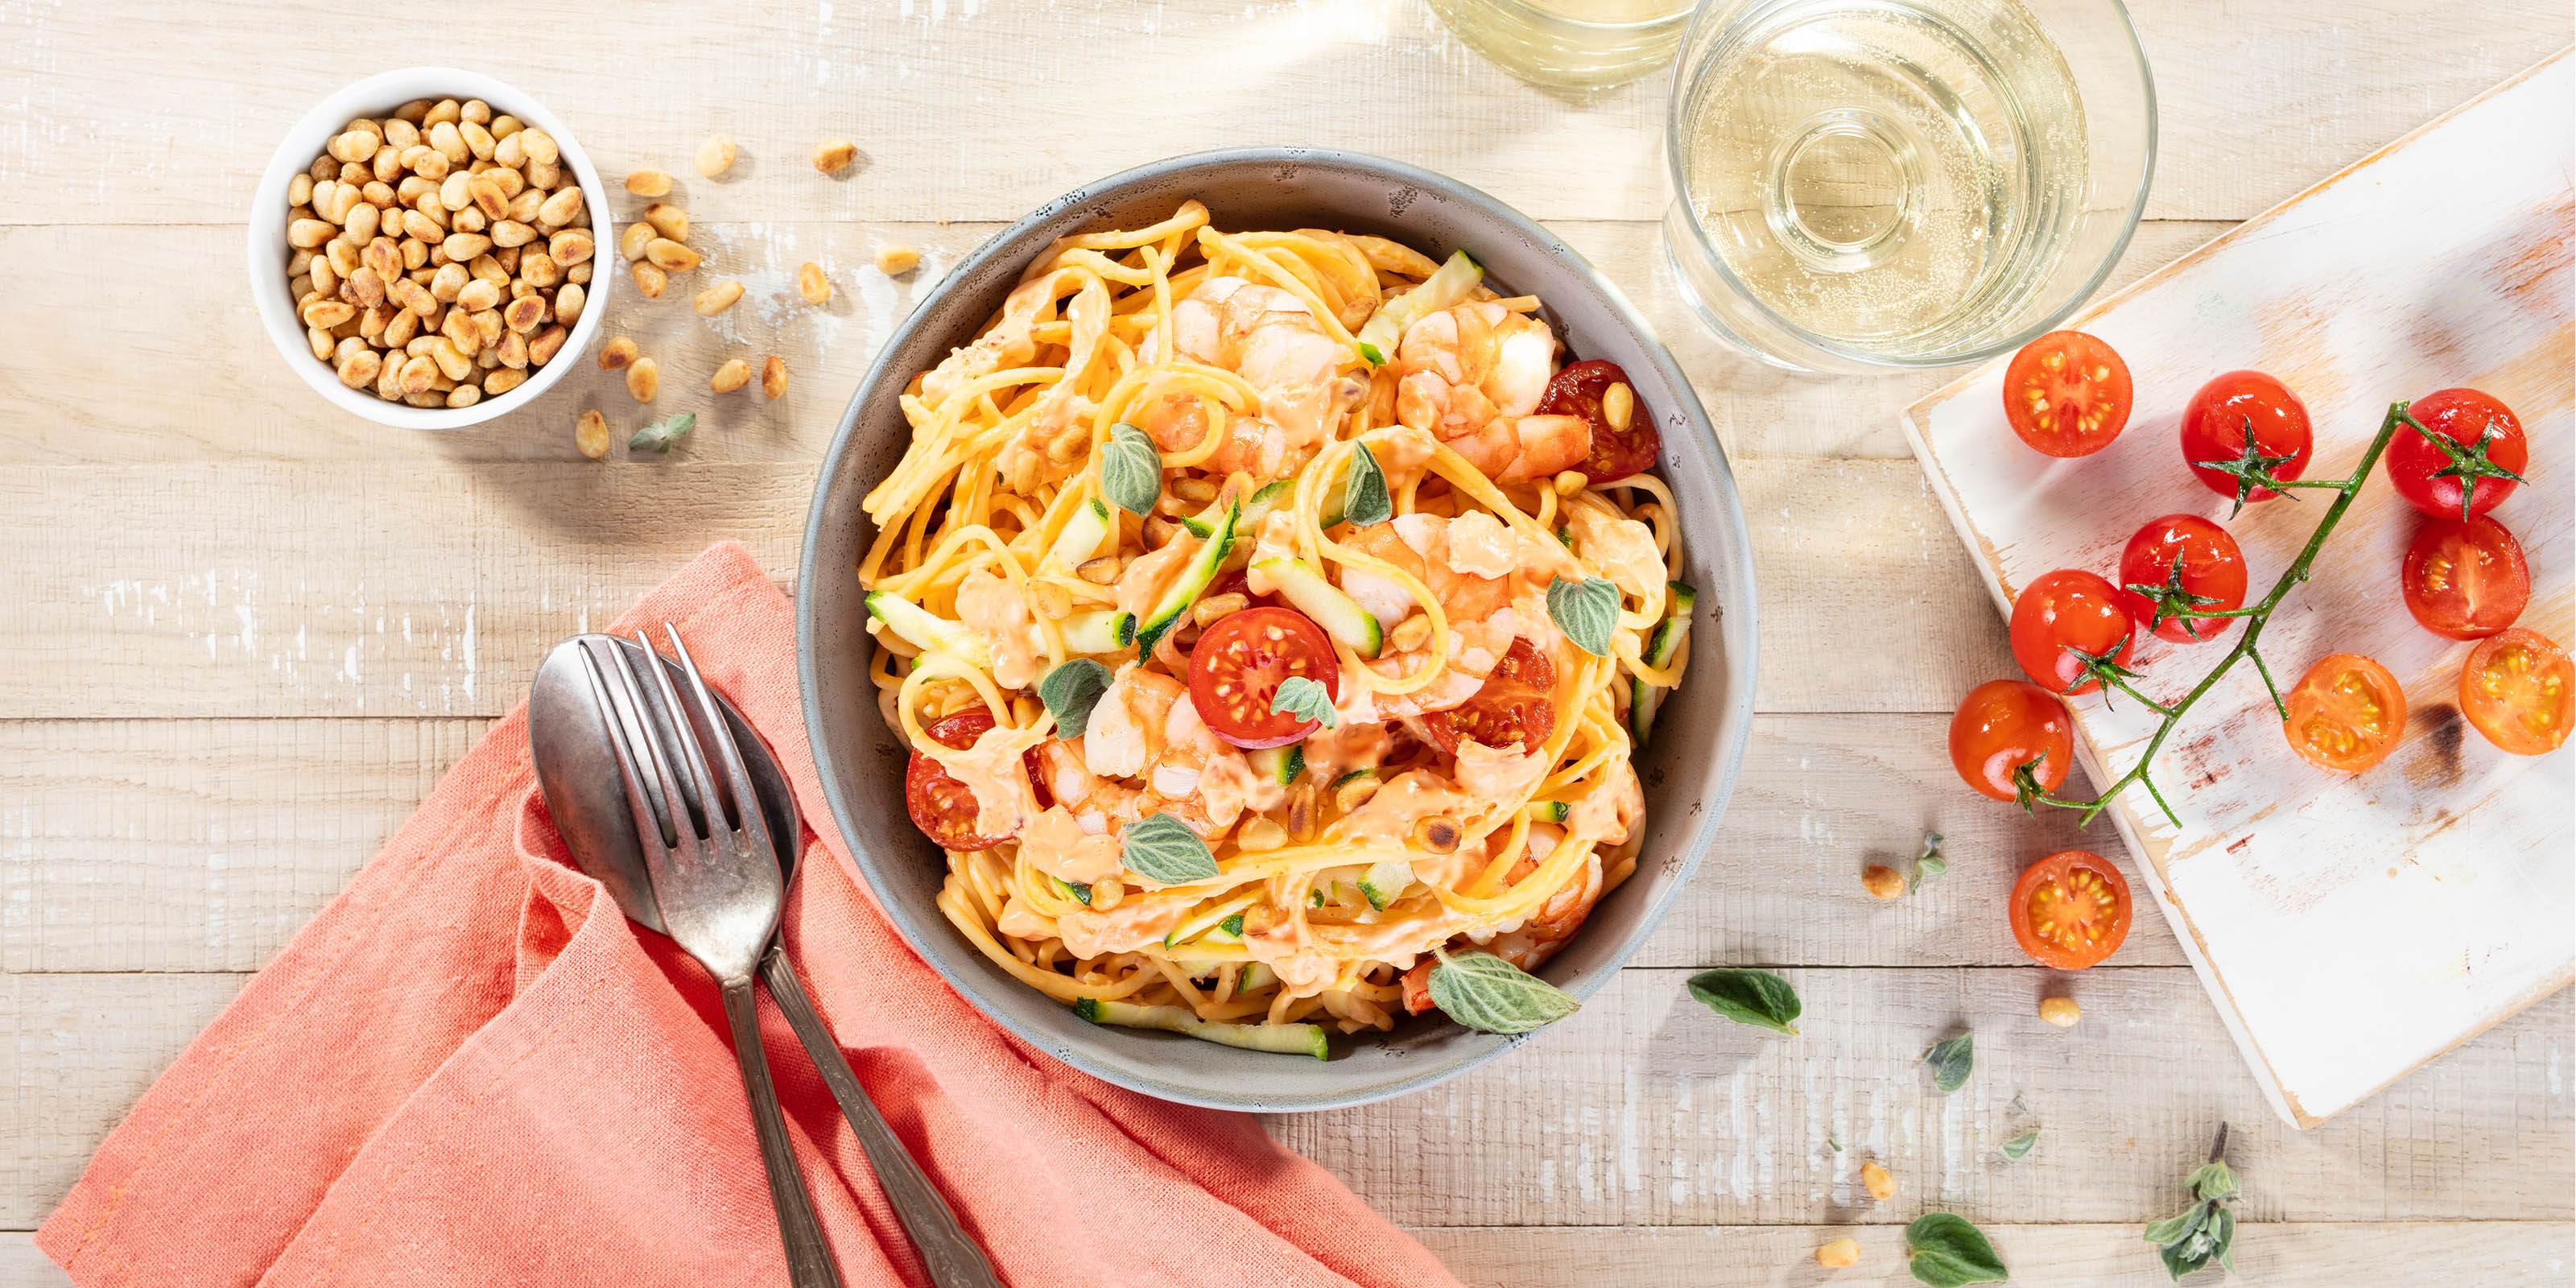 Pasta italienischer Art. Spaghetti mit Garnelen, frischen Zucchini, Cherrytomaten und Pinienkernen. 